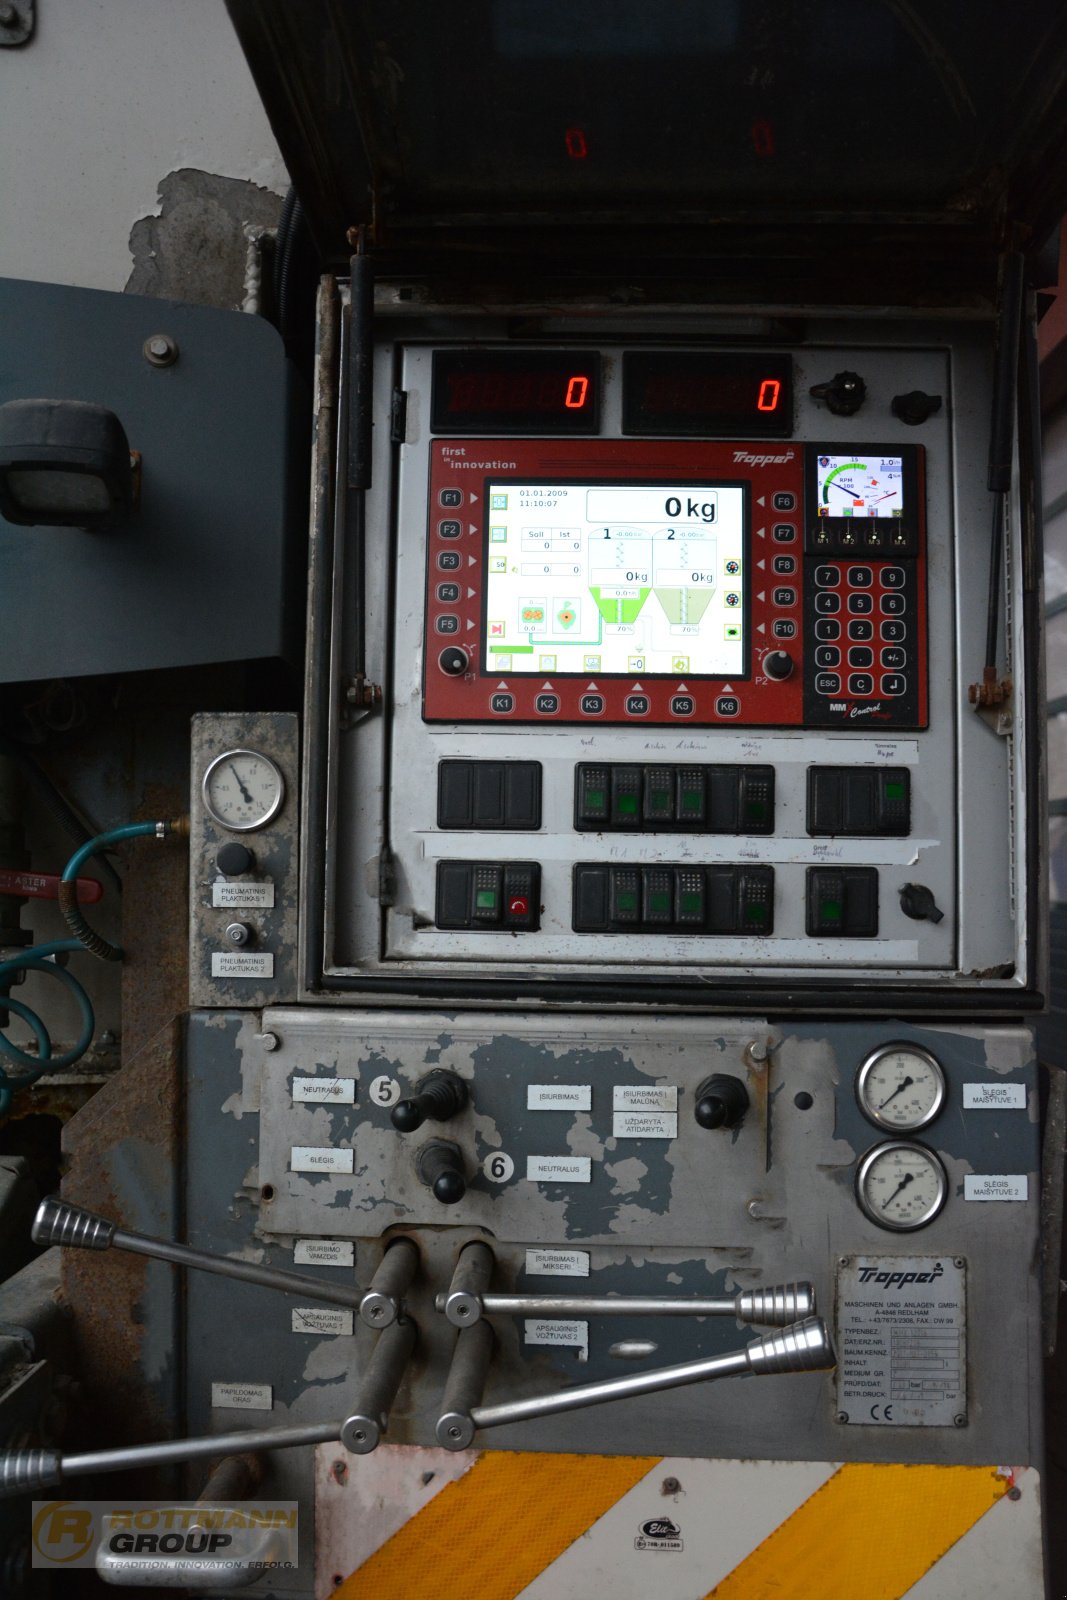 Mahlanlage & Mischanlage des Typs Tropper MMX 12016, Gebrauchtmaschine in Ahaus (Bild 6)